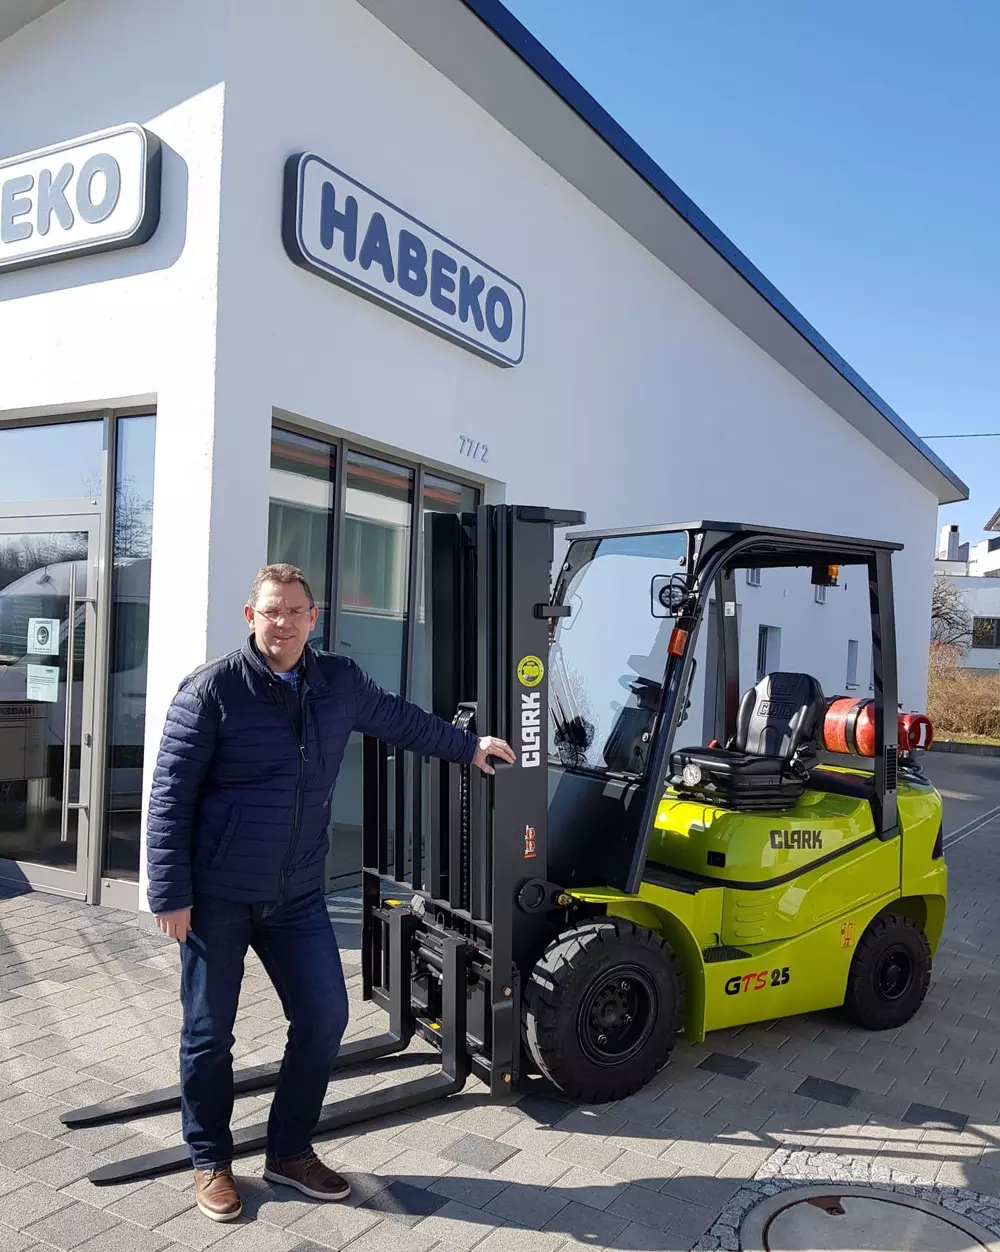 Dipl. Ing. (FH) Dirk Hail, geschäftsführender Gesellschafter der Habeko GmbH & Co. KG